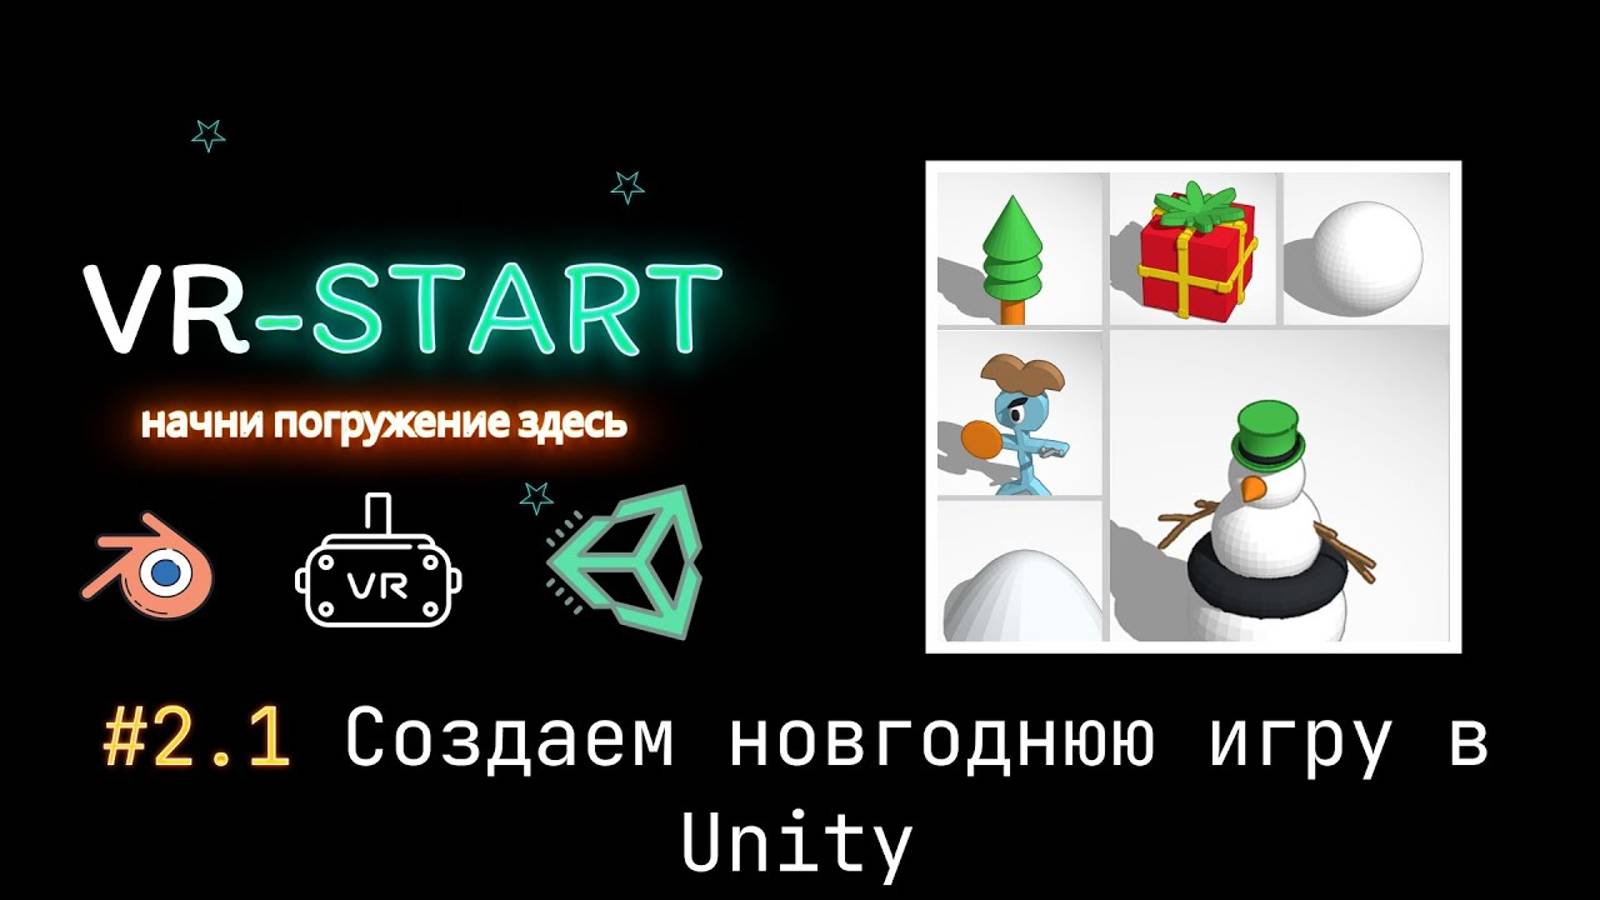 VR-Start. #2.1 Создаем новогоднюю игру в Unity. Импорт моделей из Tinkercad в Unity